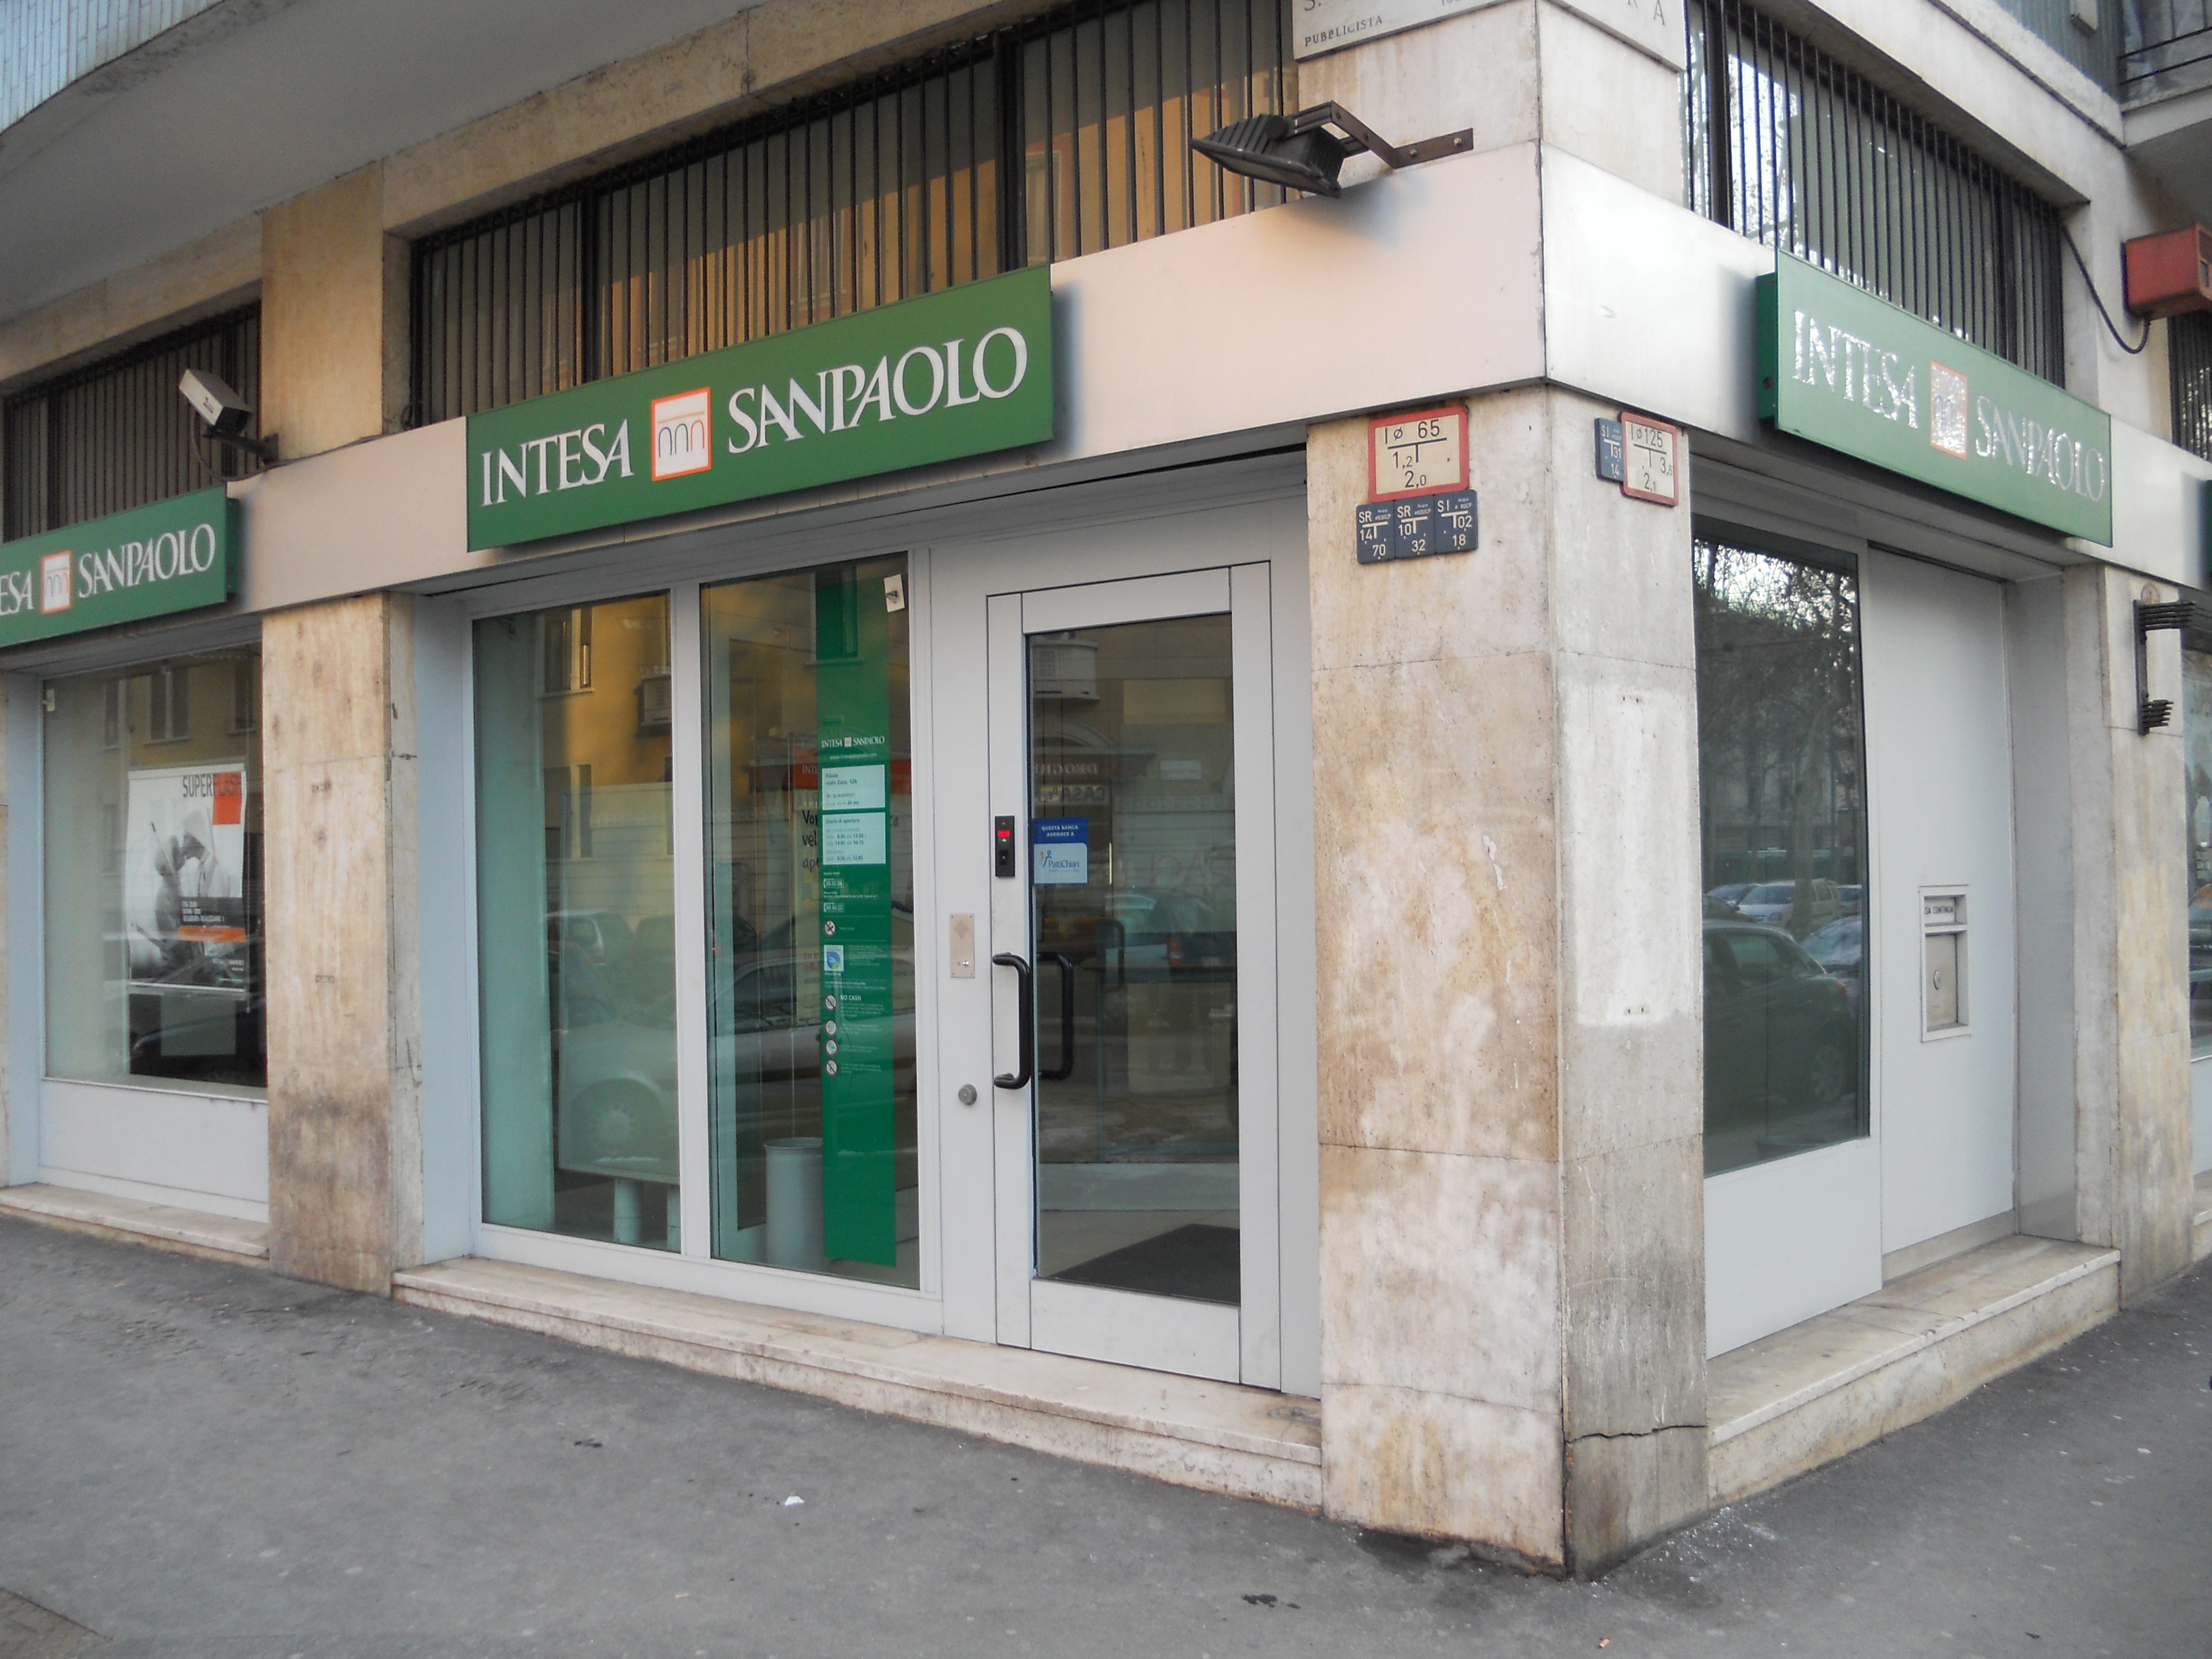 Intesa Sanpaolo In Banca Solo Su Appuntamento Il Torinese